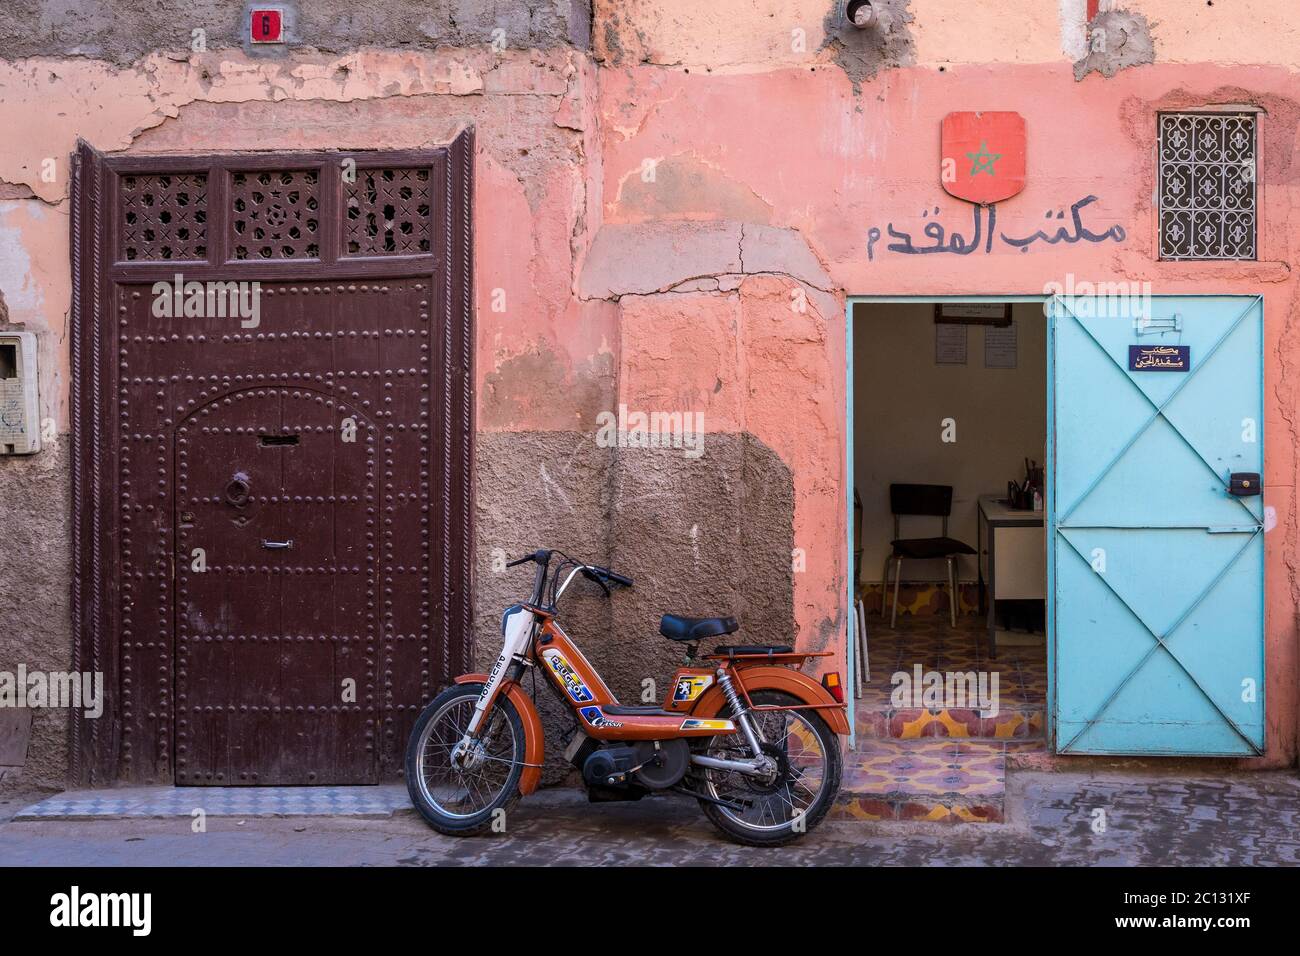 Vue sur la ville de Marrakech, avec un mur rose et une moto garée dans la rue Banque D'Images